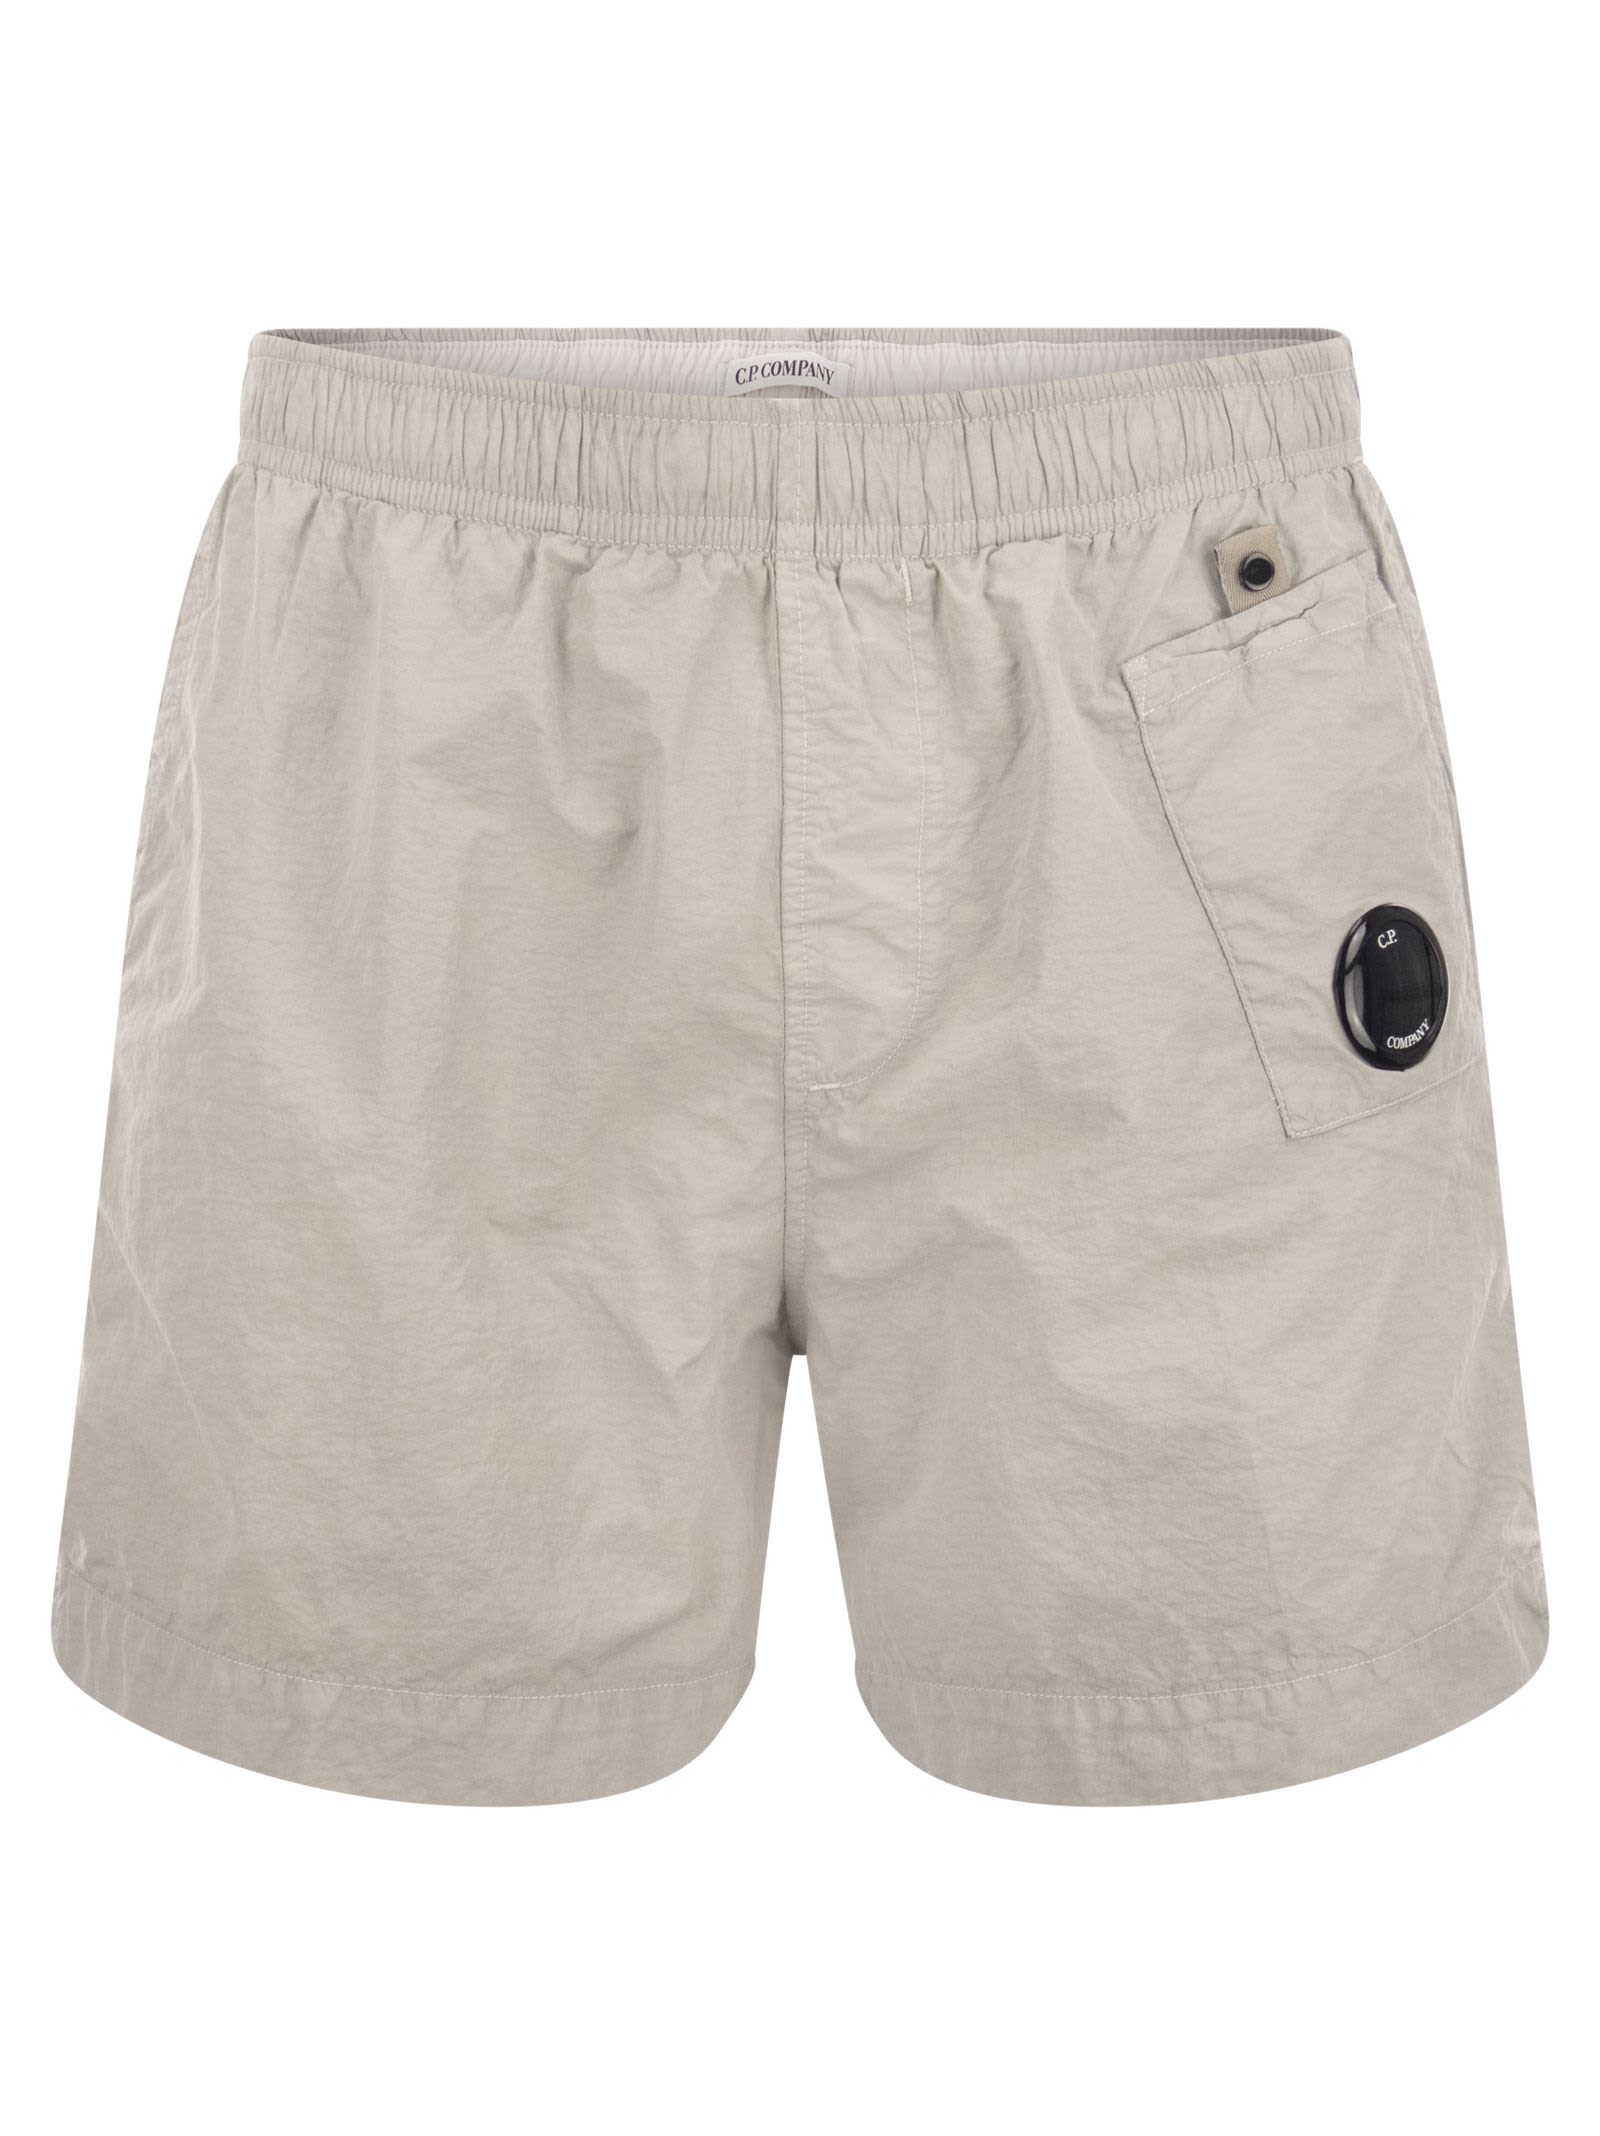 C.P. Company Flatt Nylon Auxiliary Pocket Swim Shorts